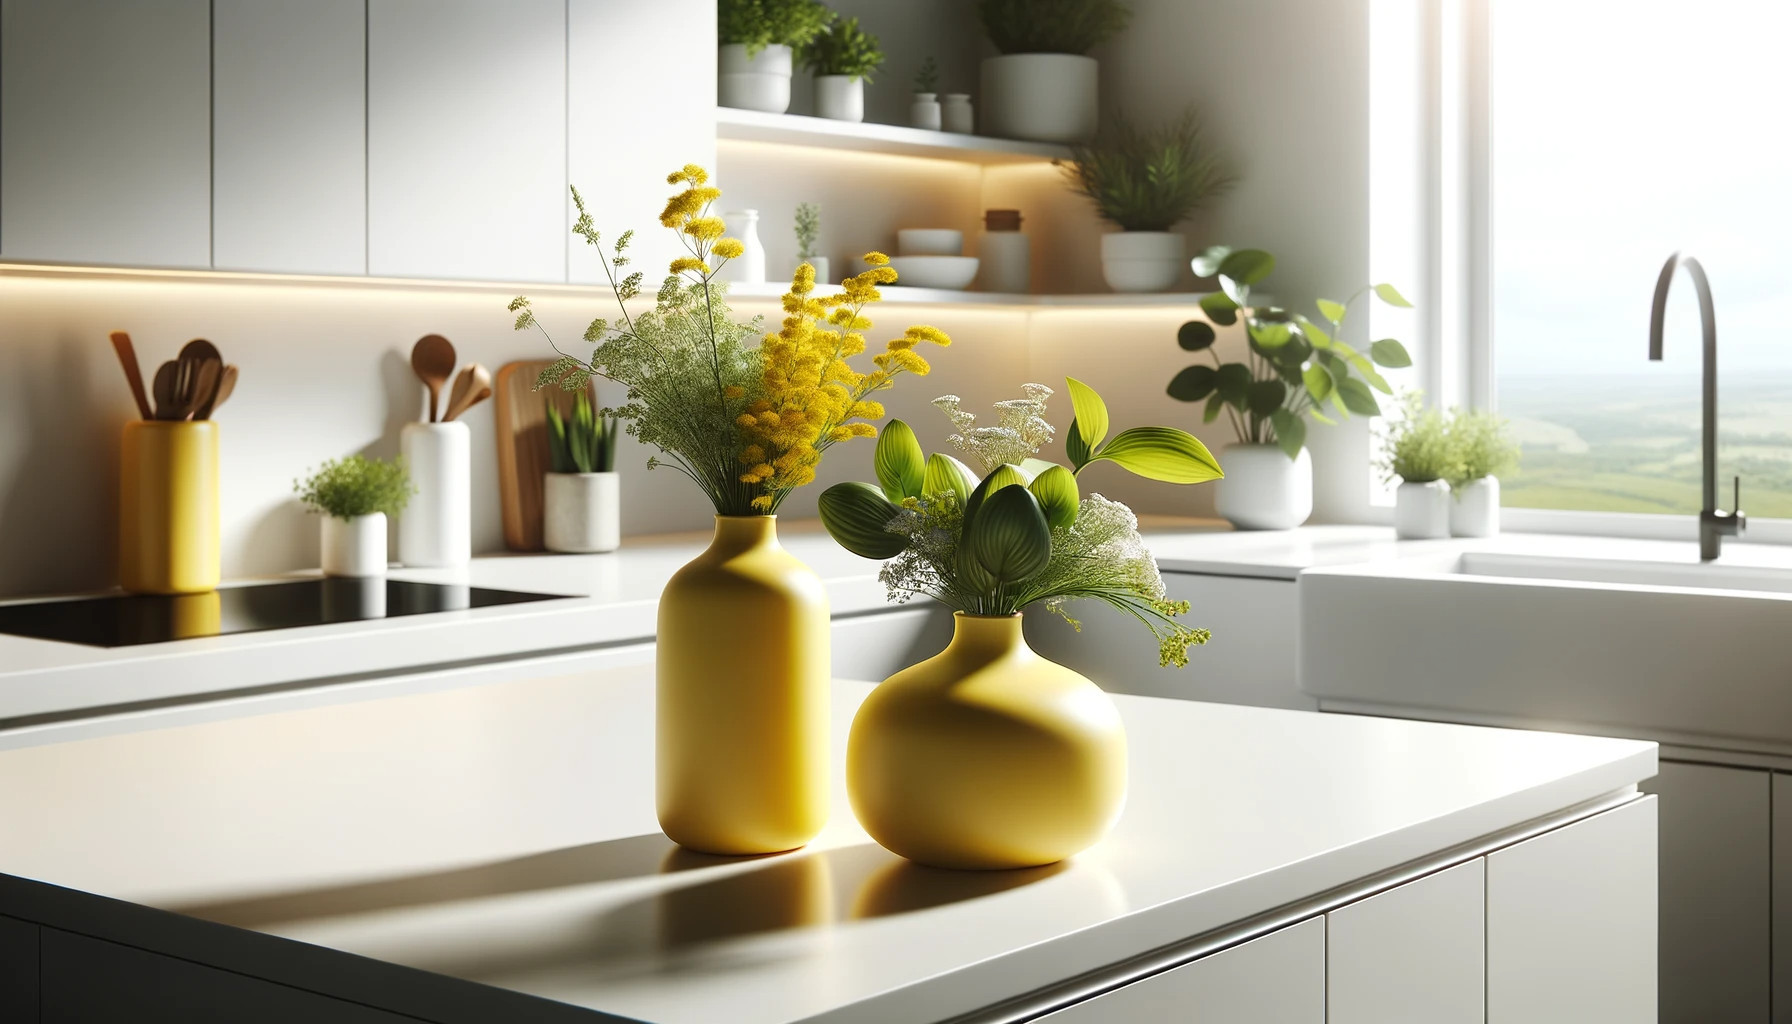 Come Arredare una Cucina con vasi. In questa immagine ci sono 2 vasi gialli in una cucina bianca che danno colore